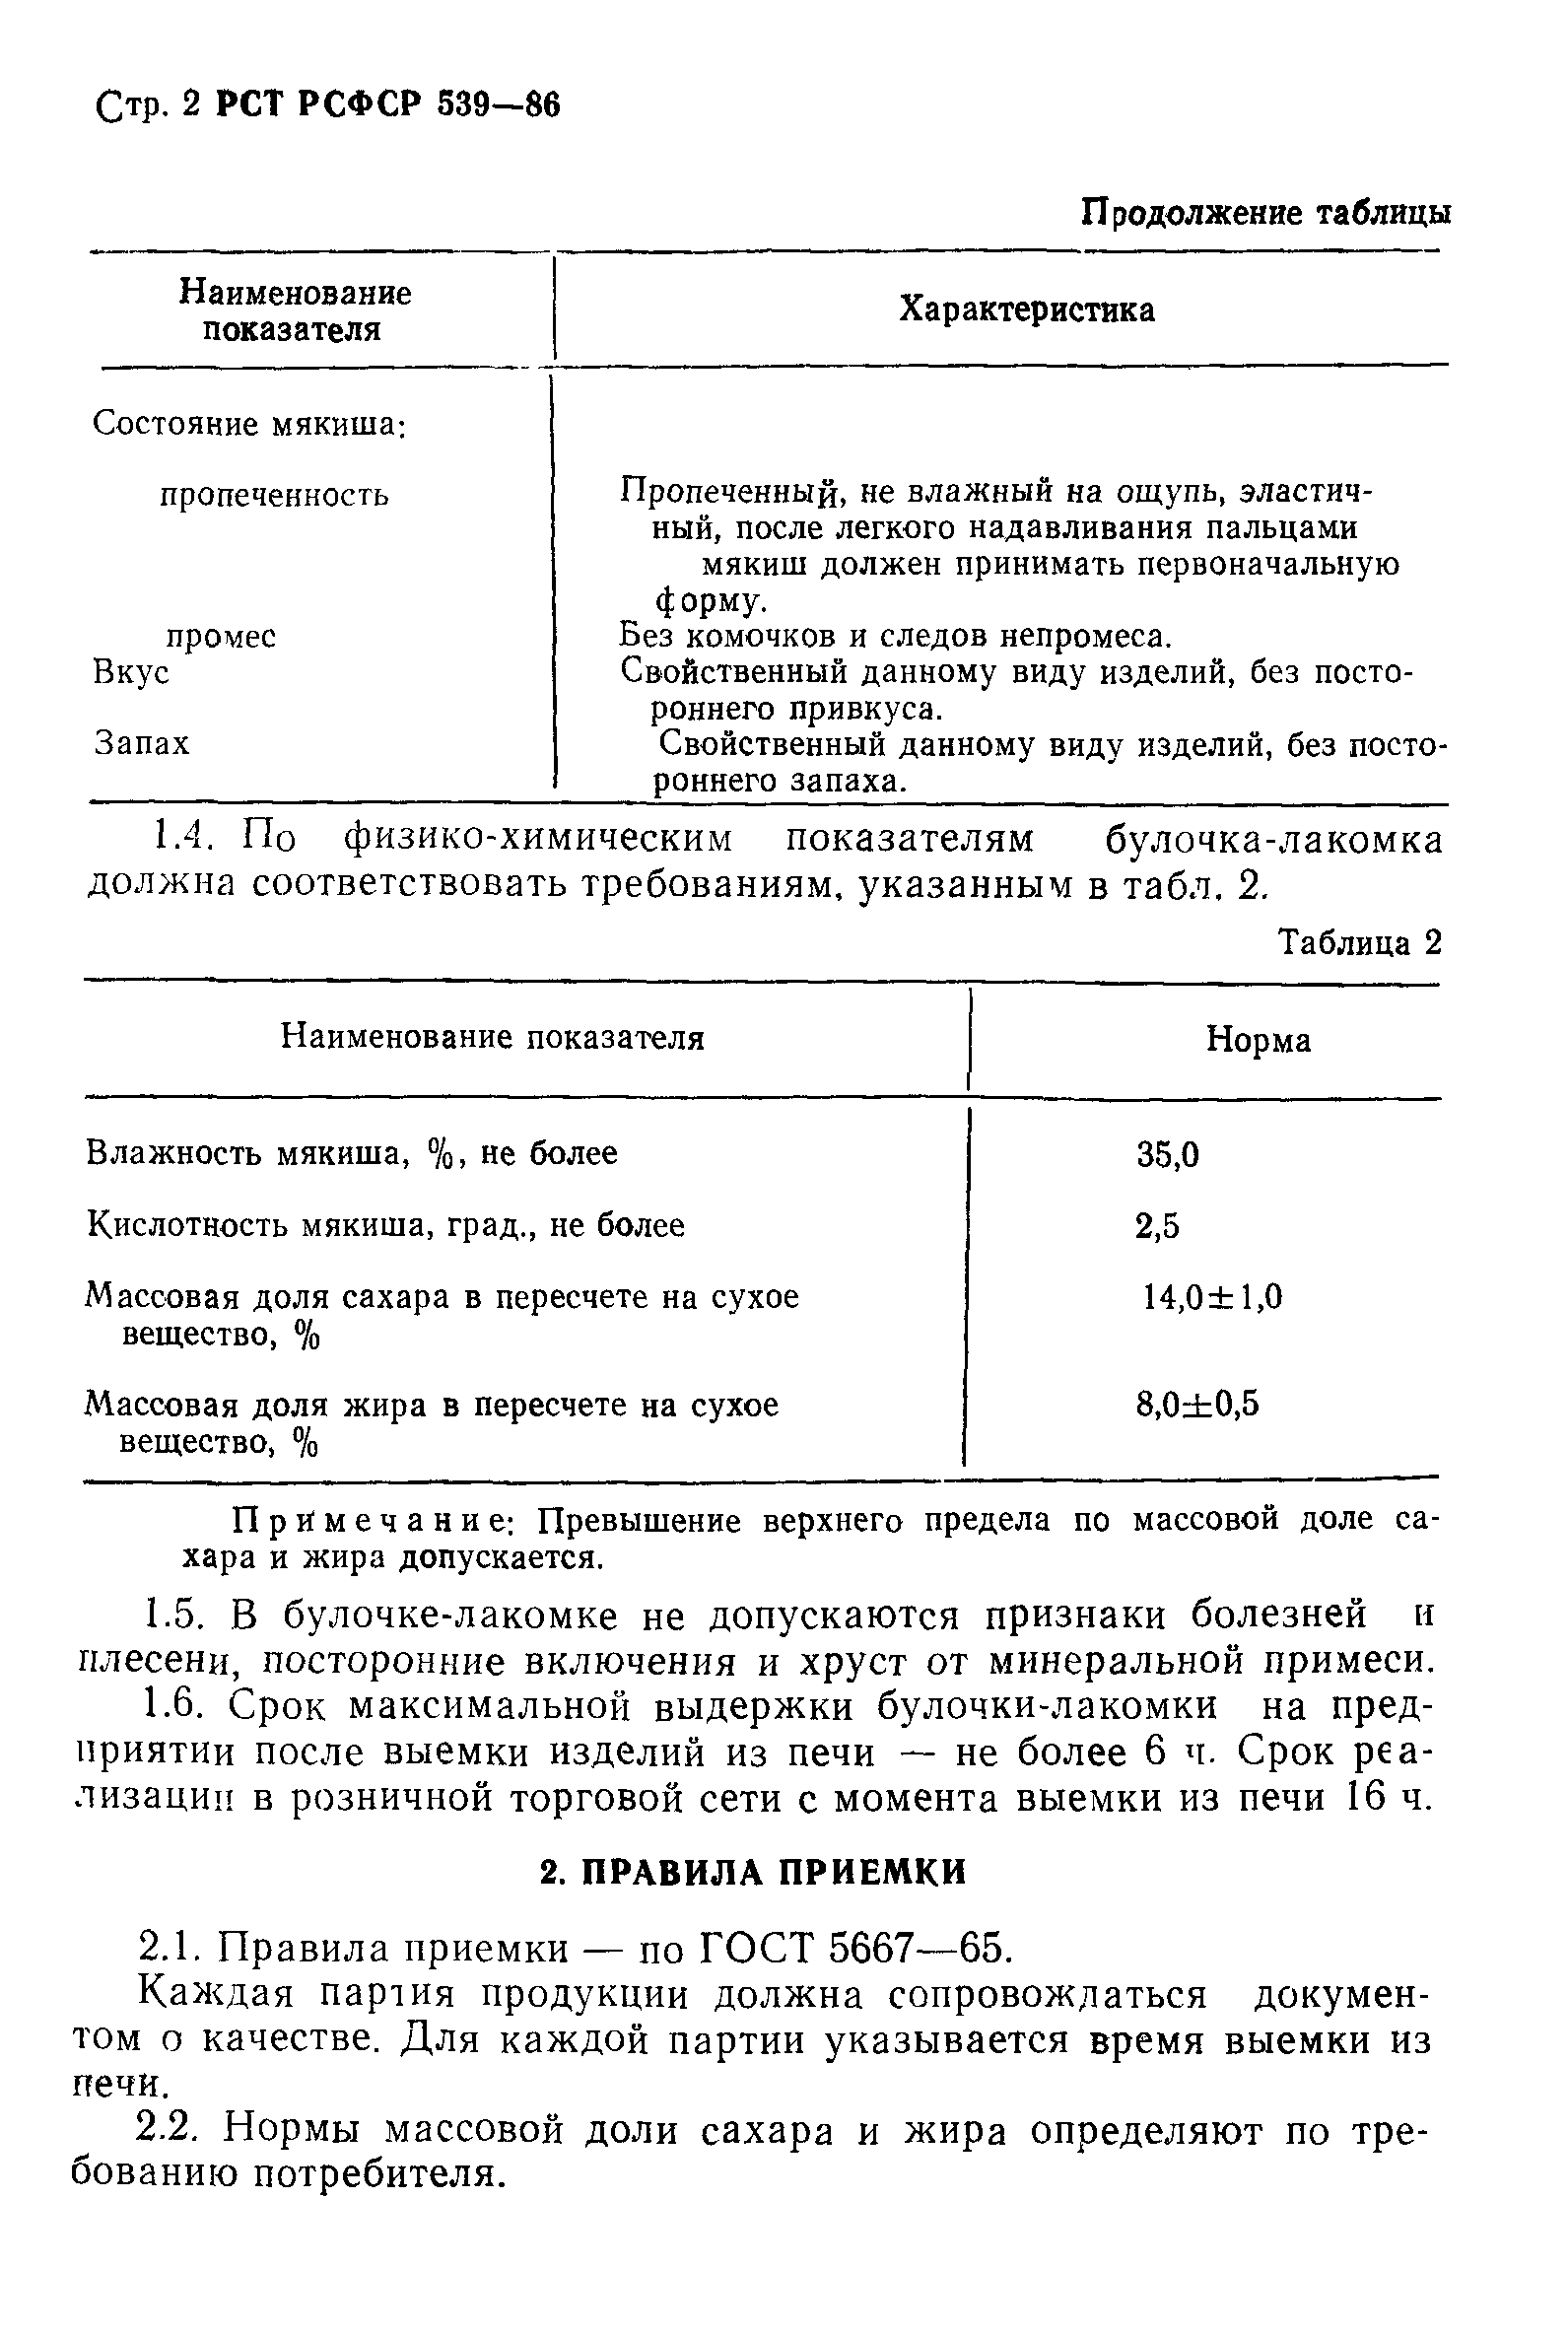 РСТ РСФСР 539-86